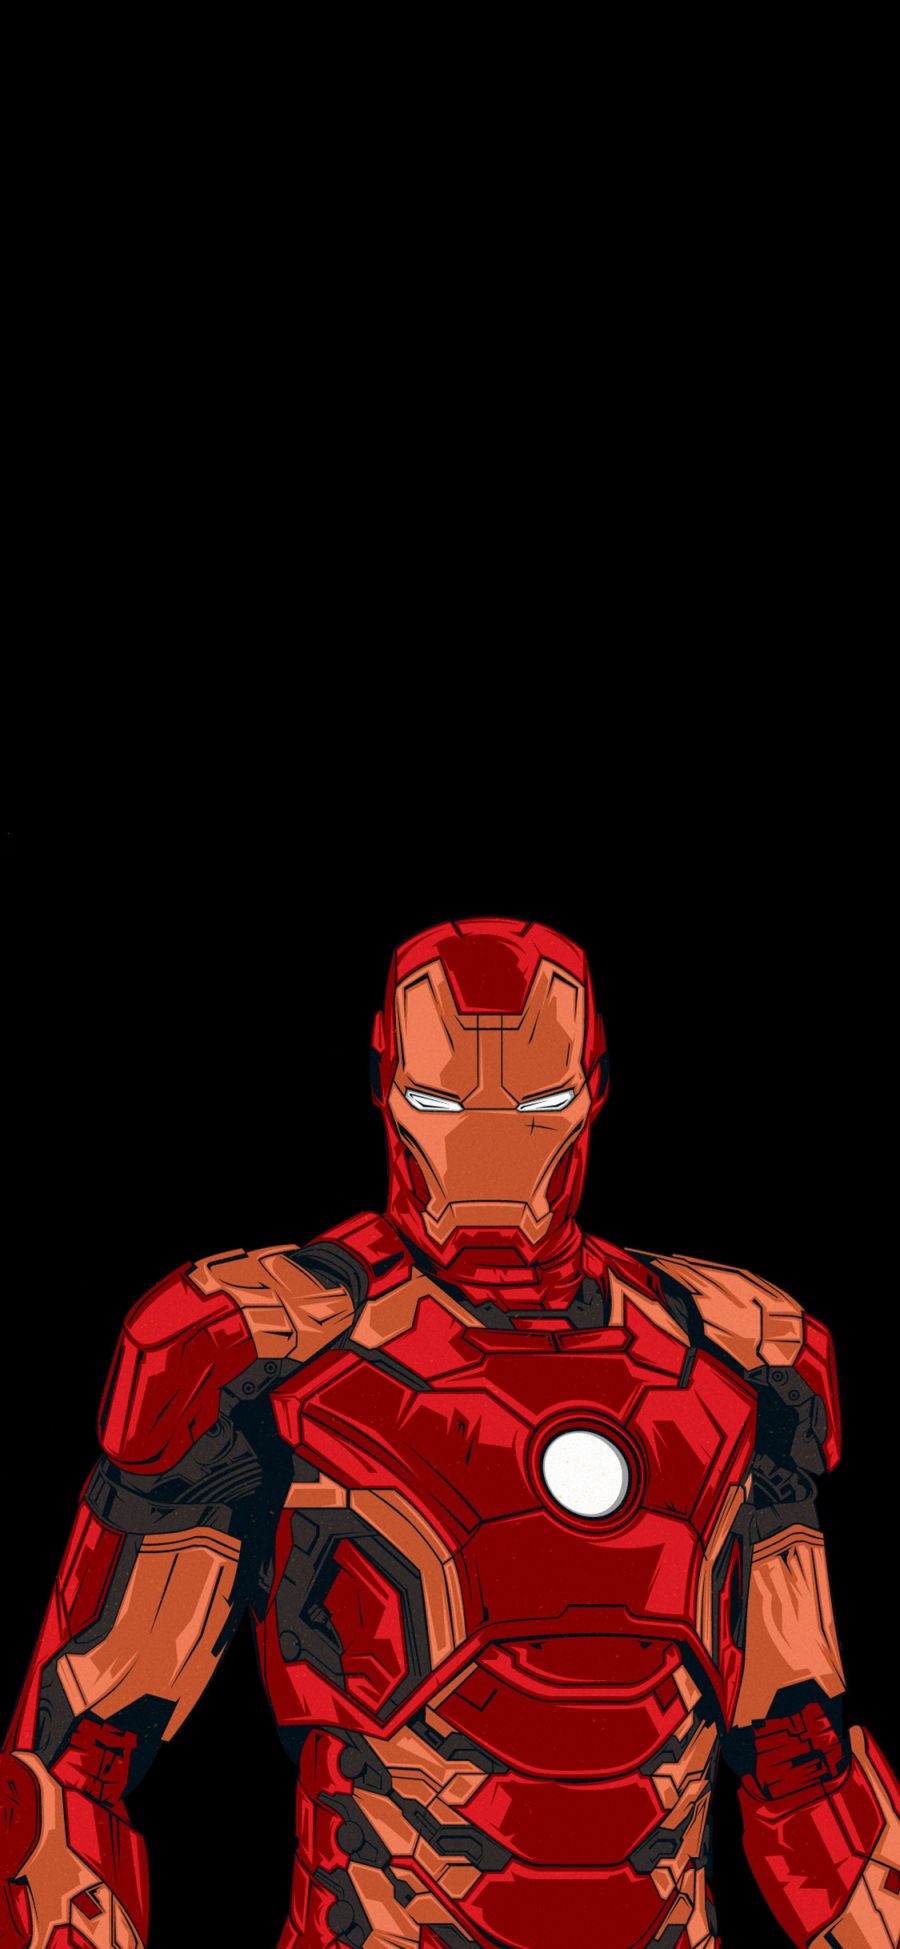 [2436×1125]钢铁侠 复仇者联盟 超级英雄 漫威 苹果手机动漫壁纸图片